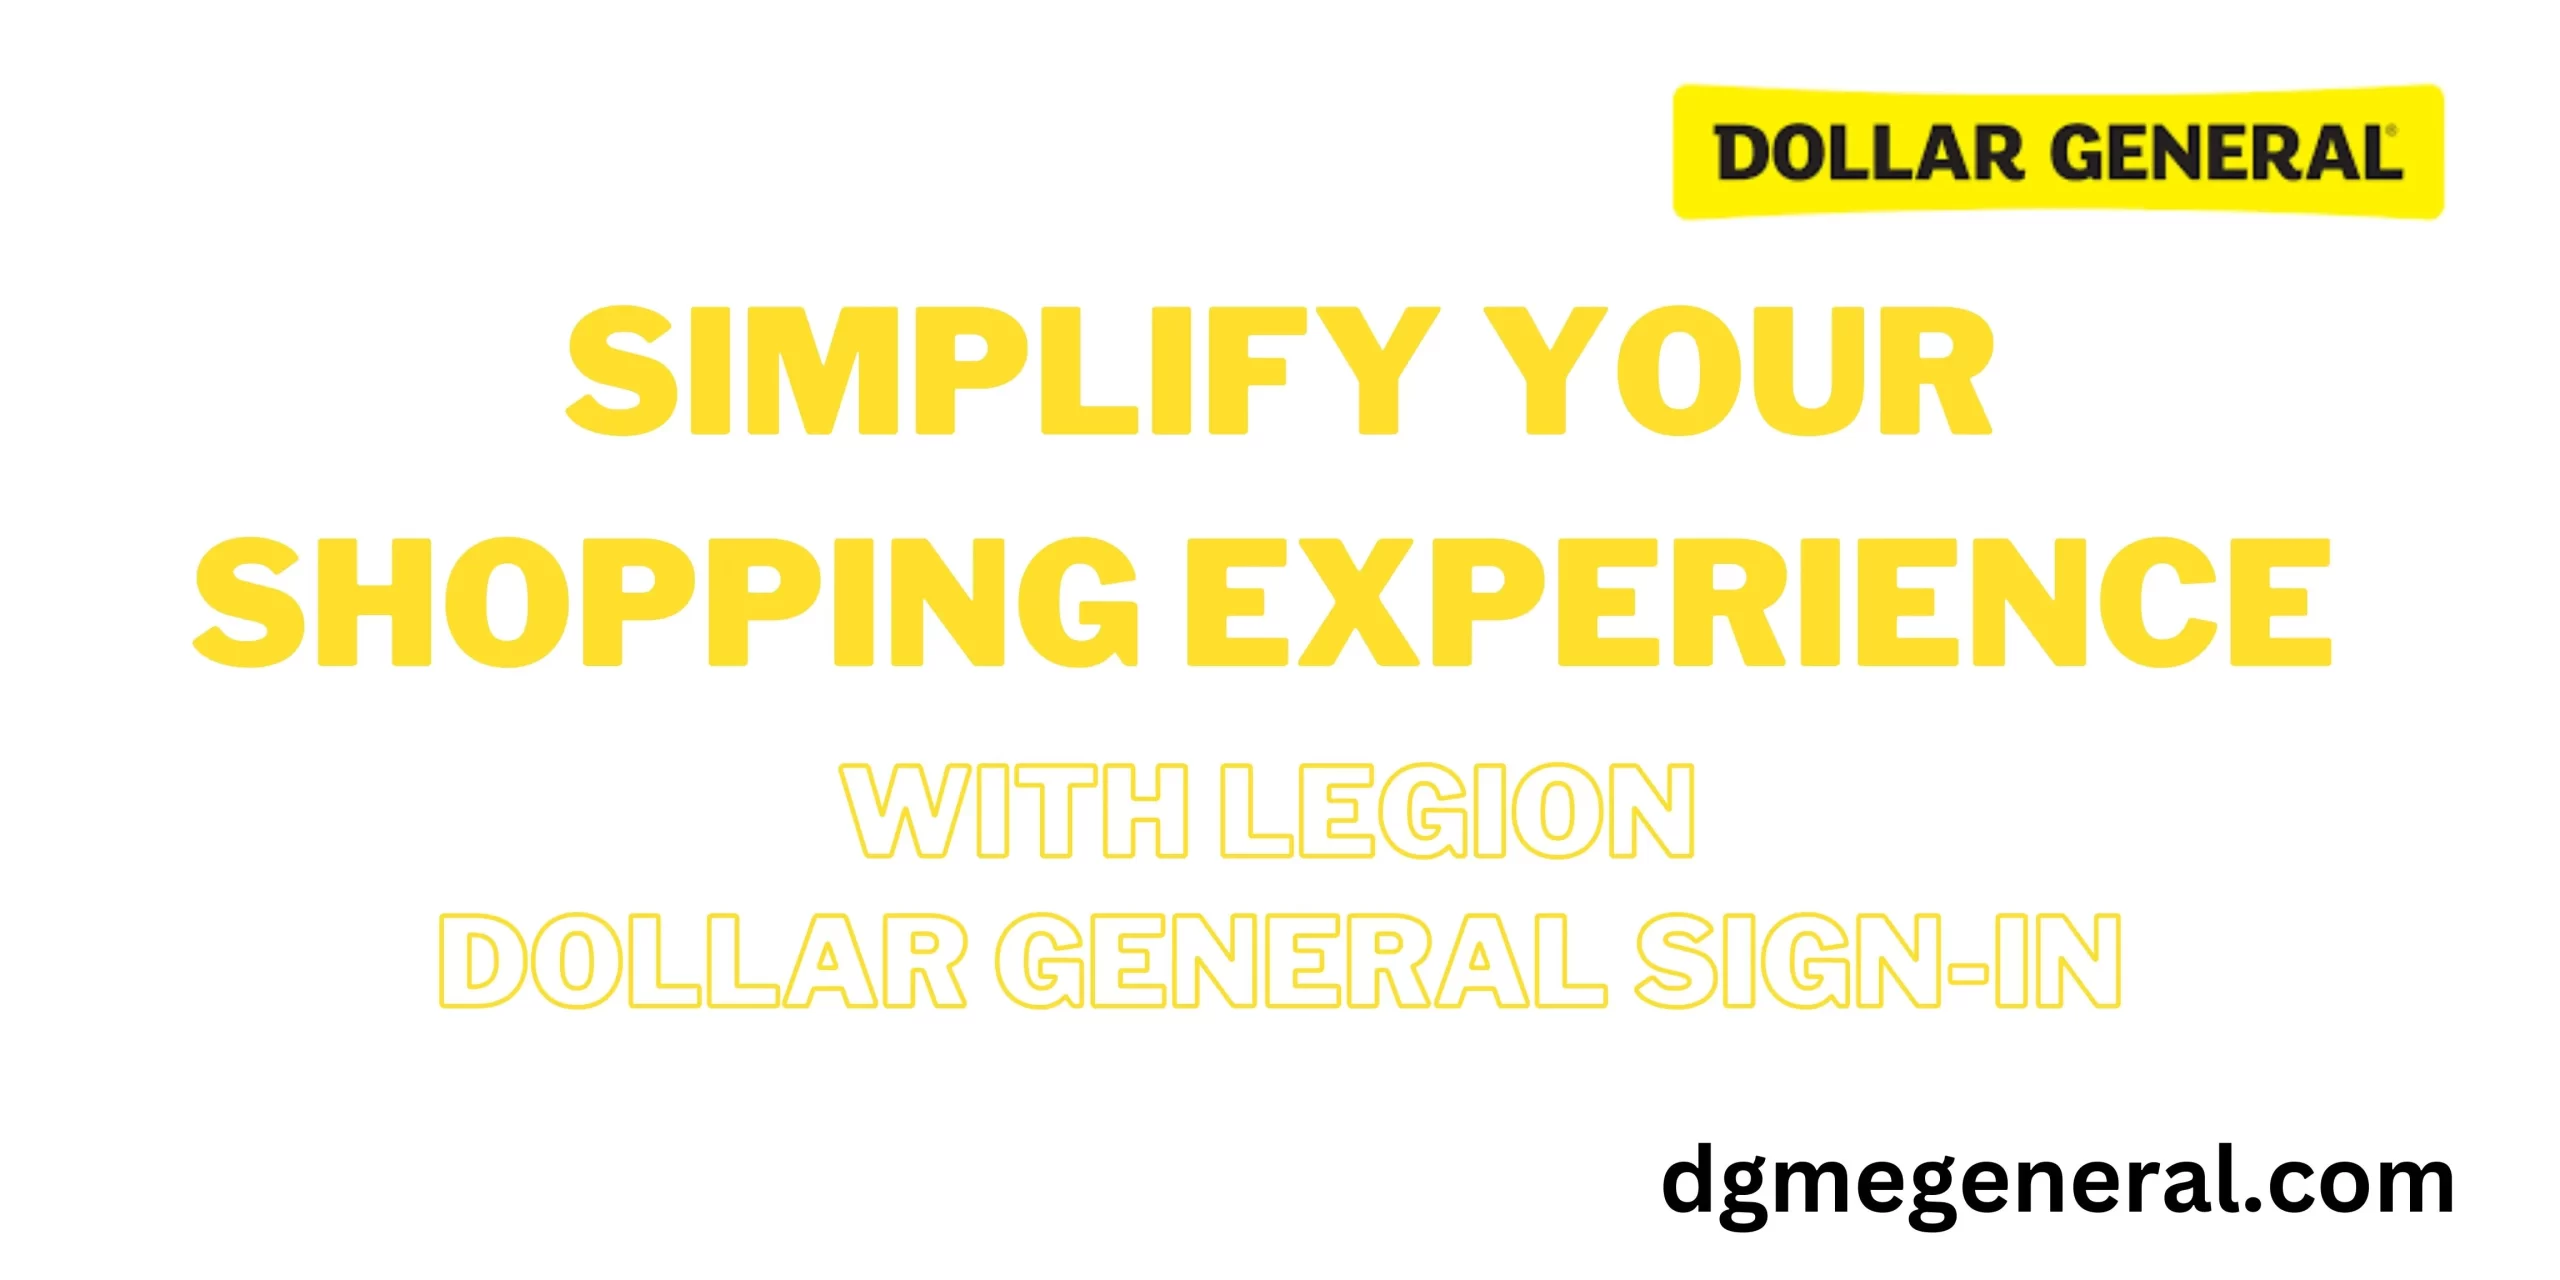 legion-dollar-general-sign-in